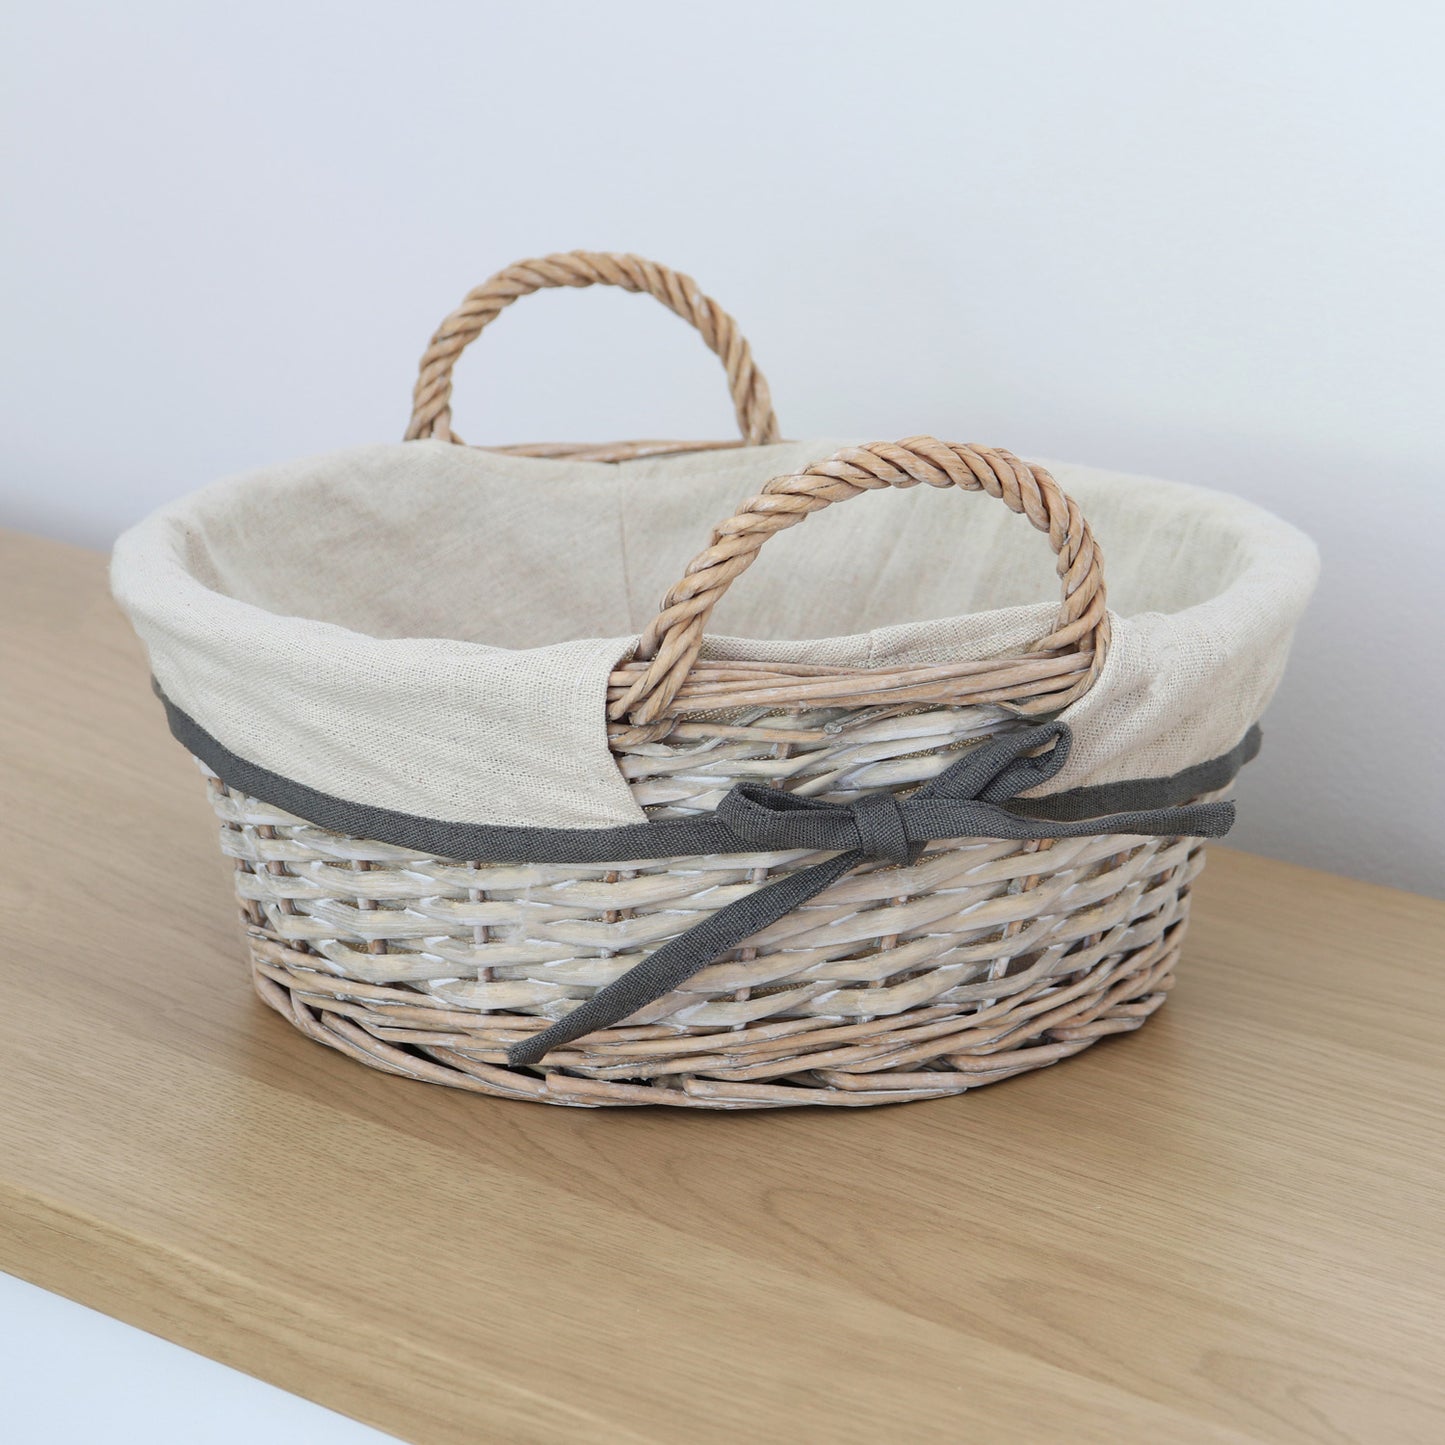 Arianna Antique Wash Round Willow Storage Basket